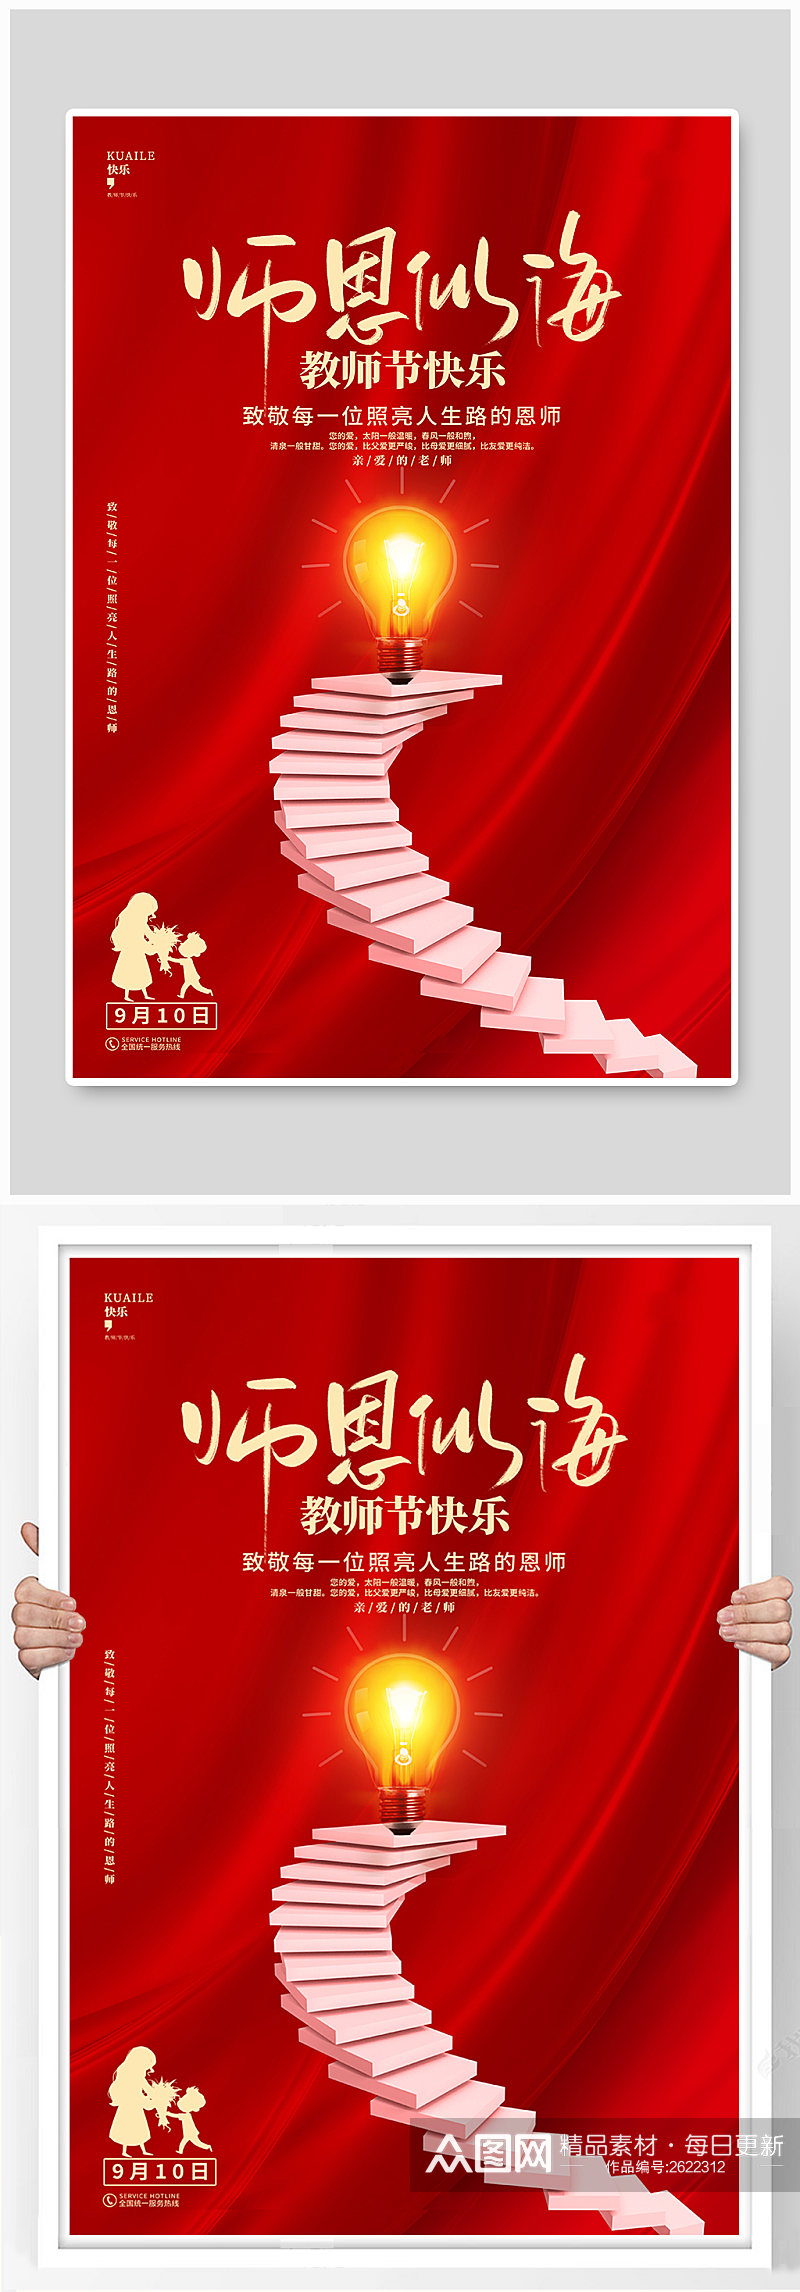 红色喜庆教师节宣传海报素材